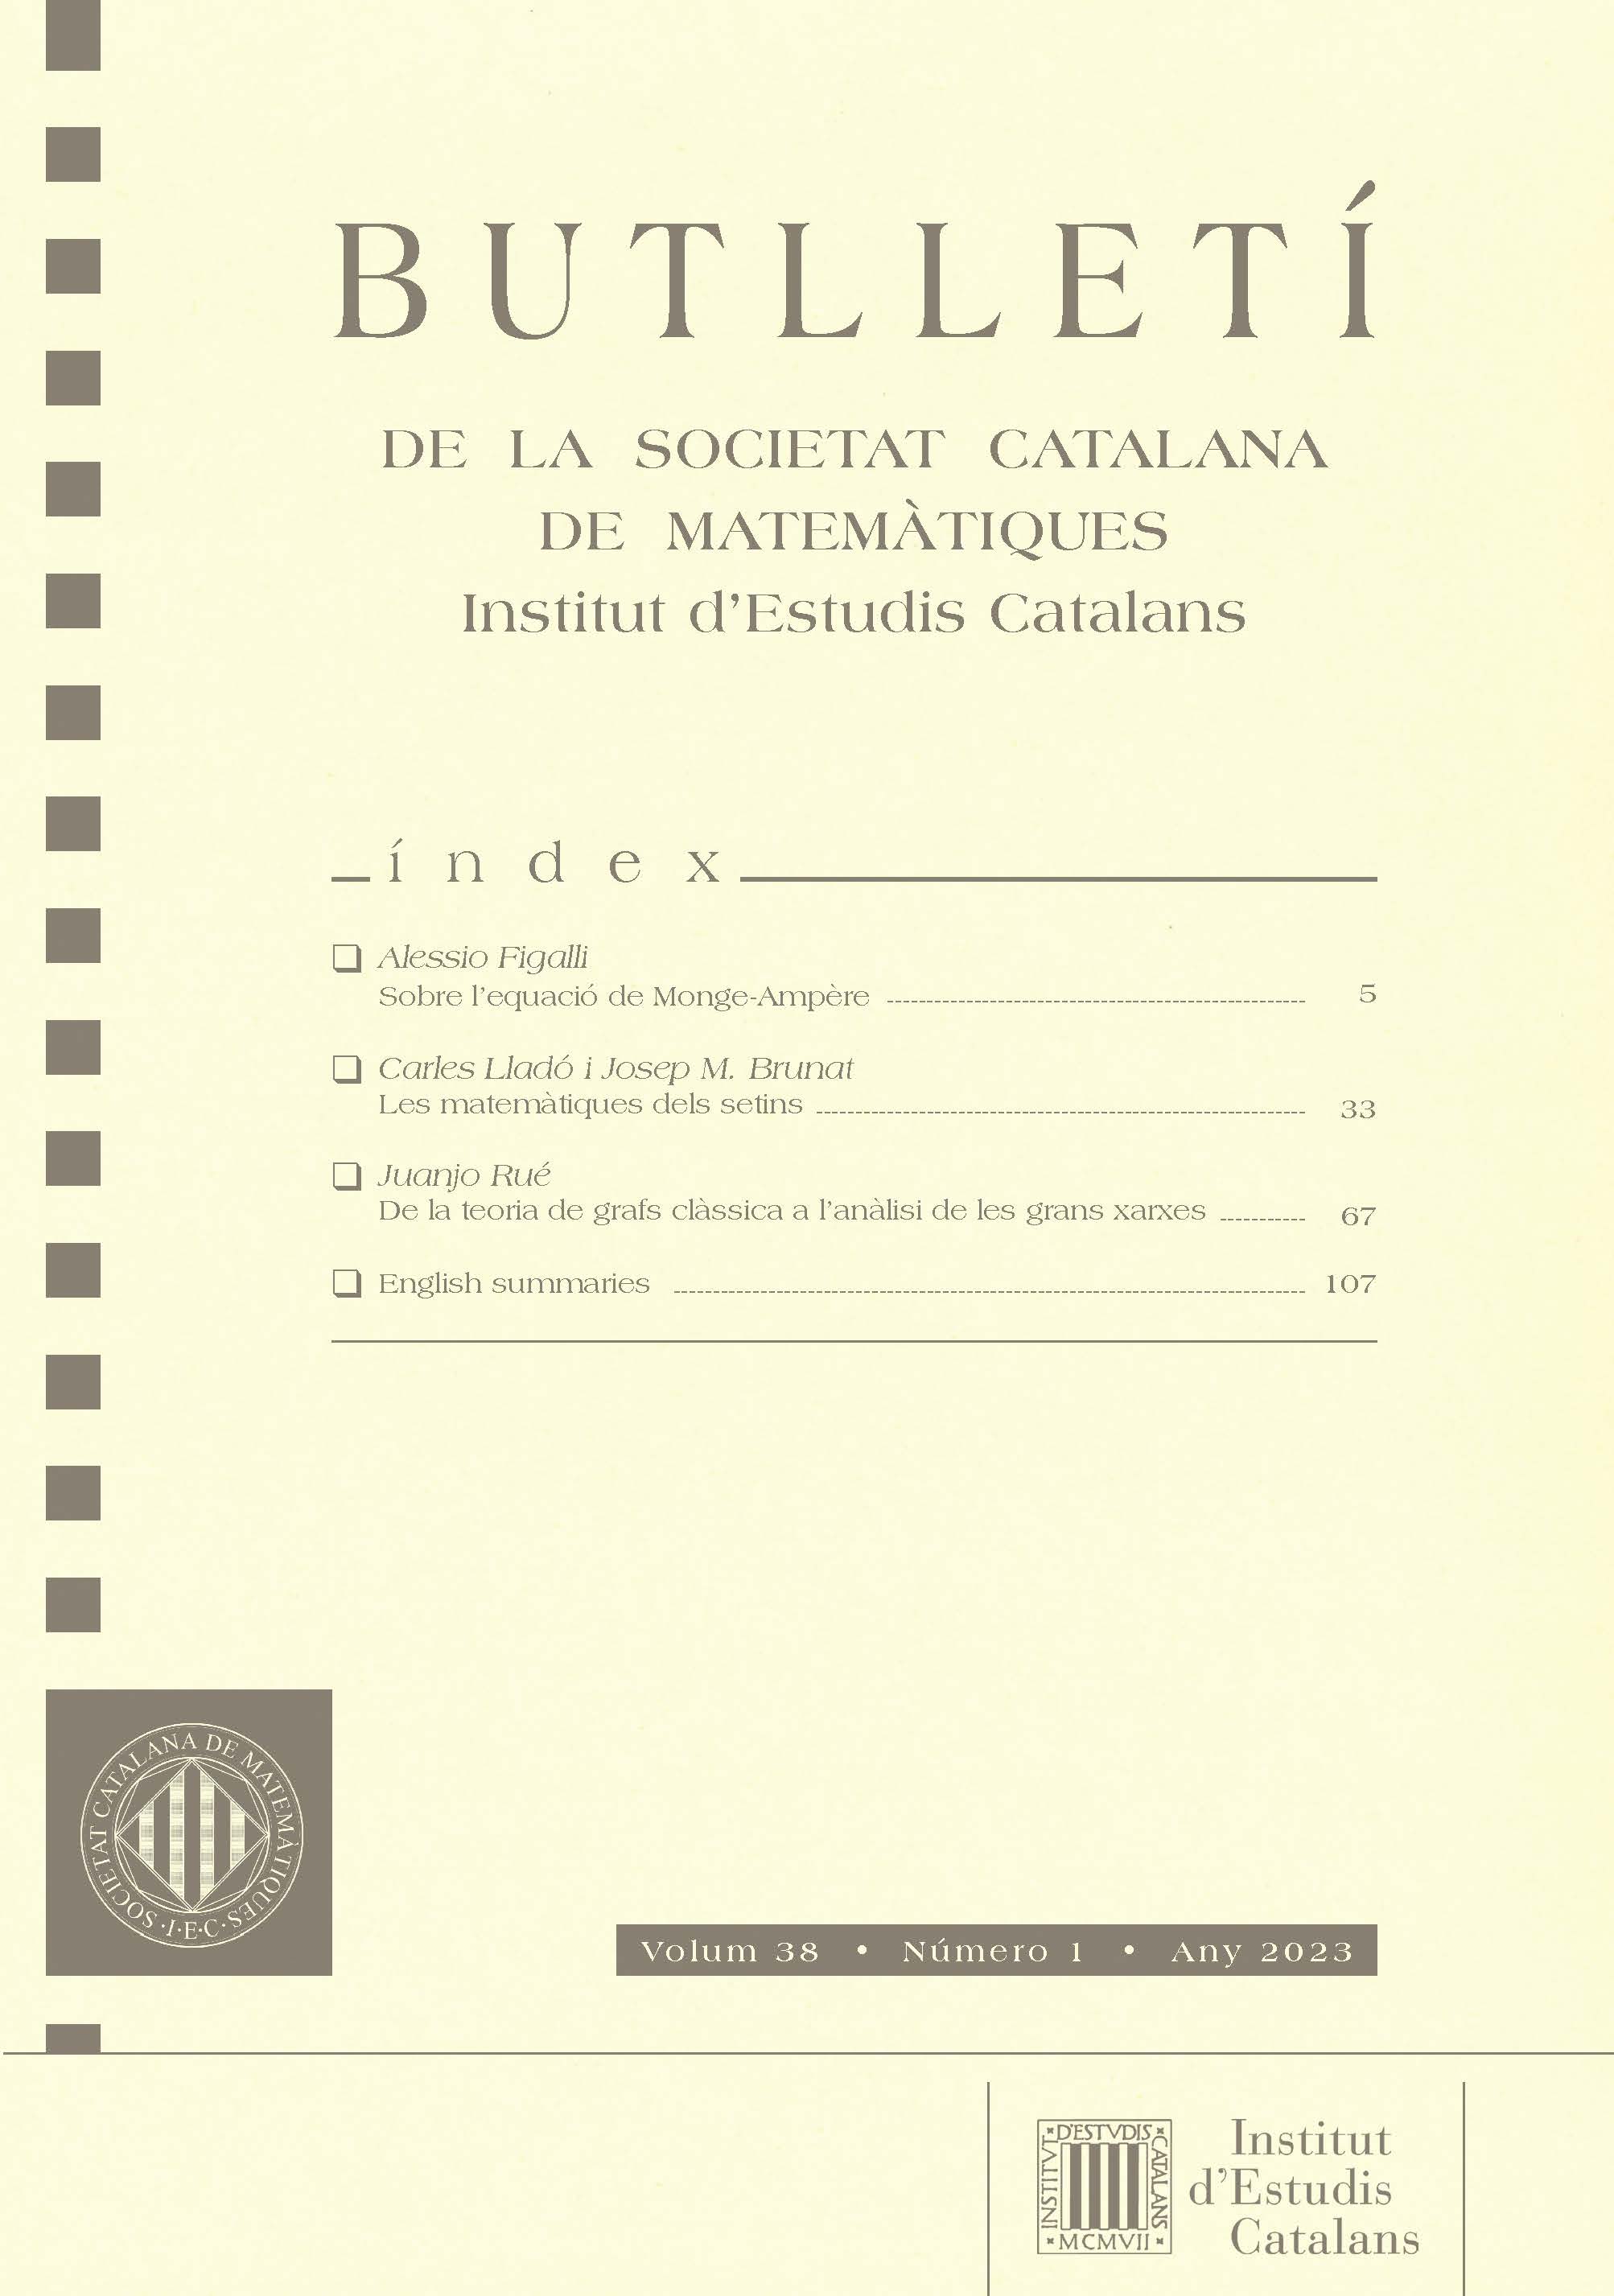 Butlletí de la Societat Catalana de Matemàtiques